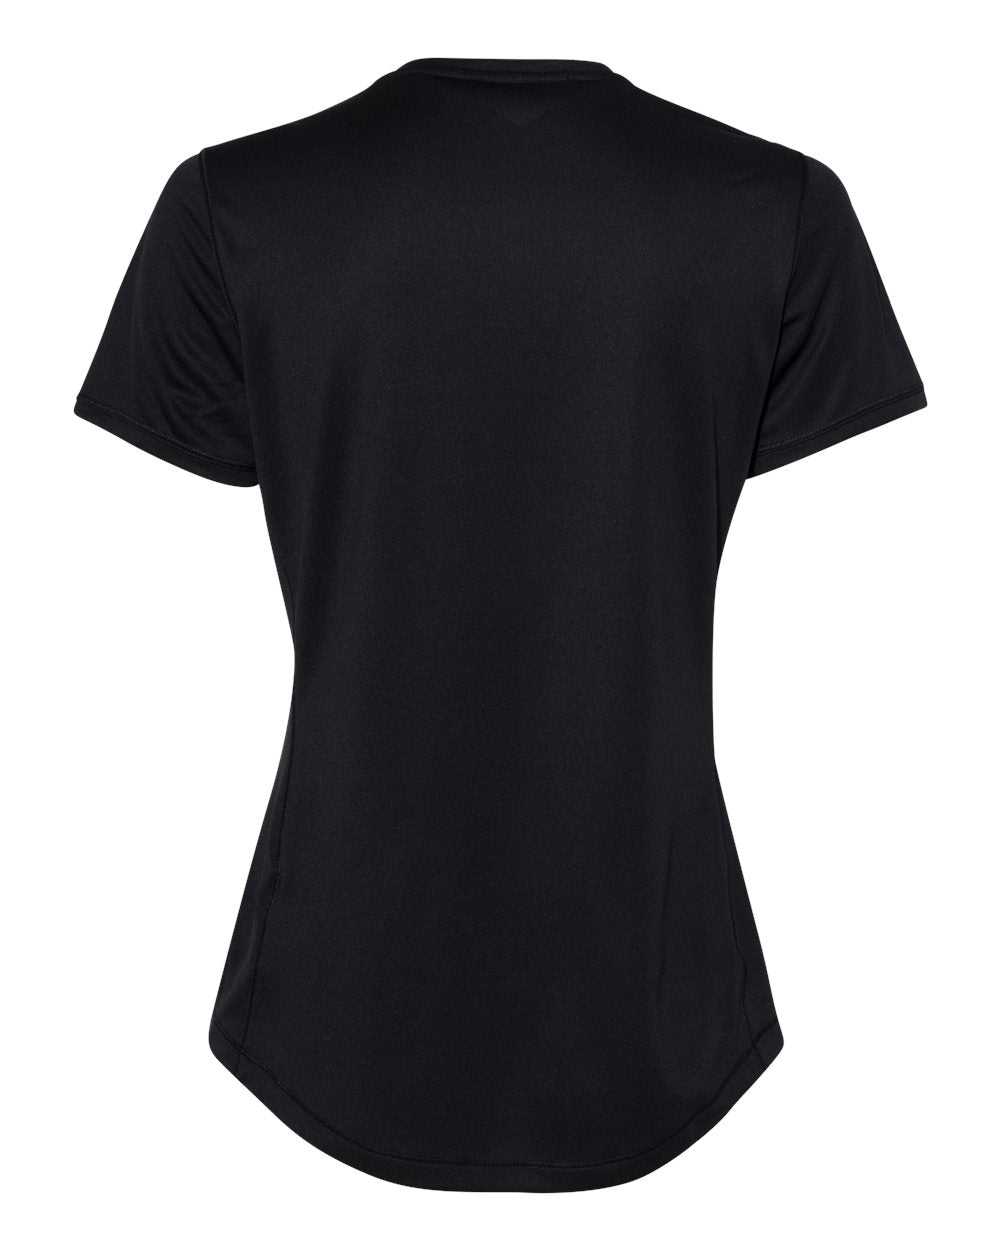 Adidas A377 Women&#39;s Sport T-Shirt - Black - HIT a Double